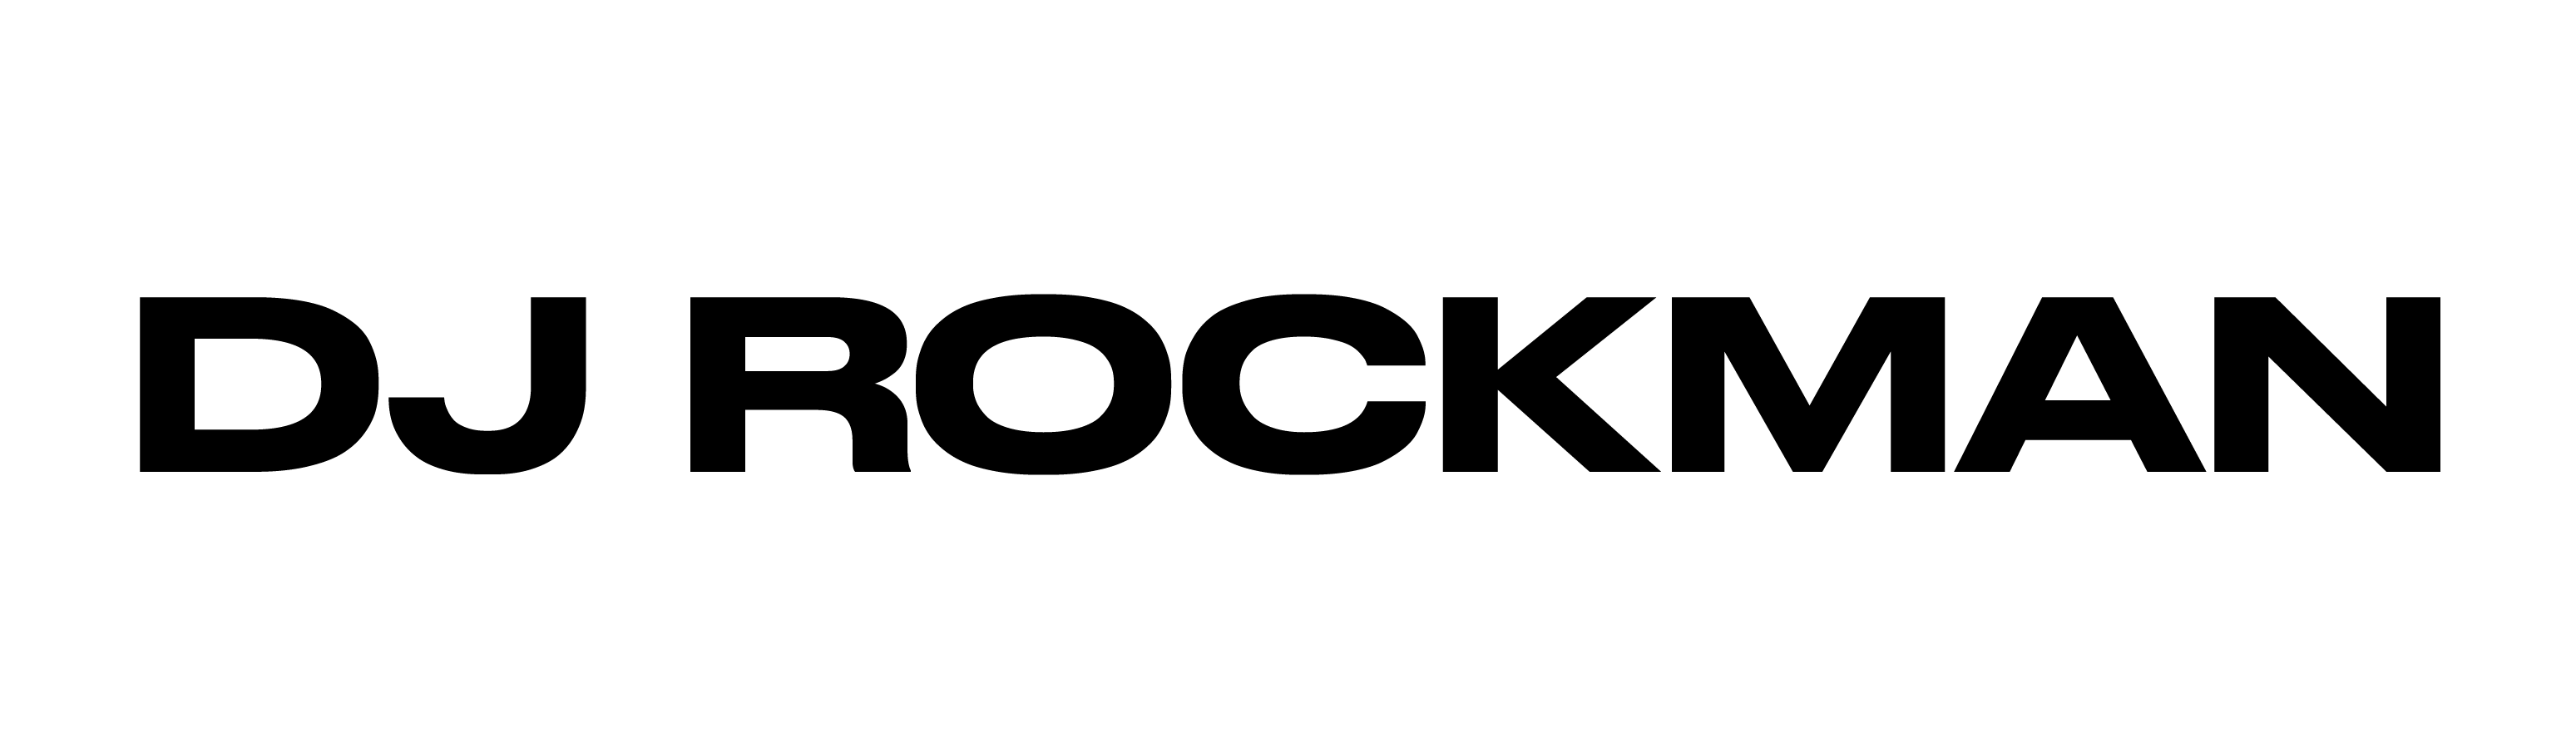 221004 Logo drafts Logo black